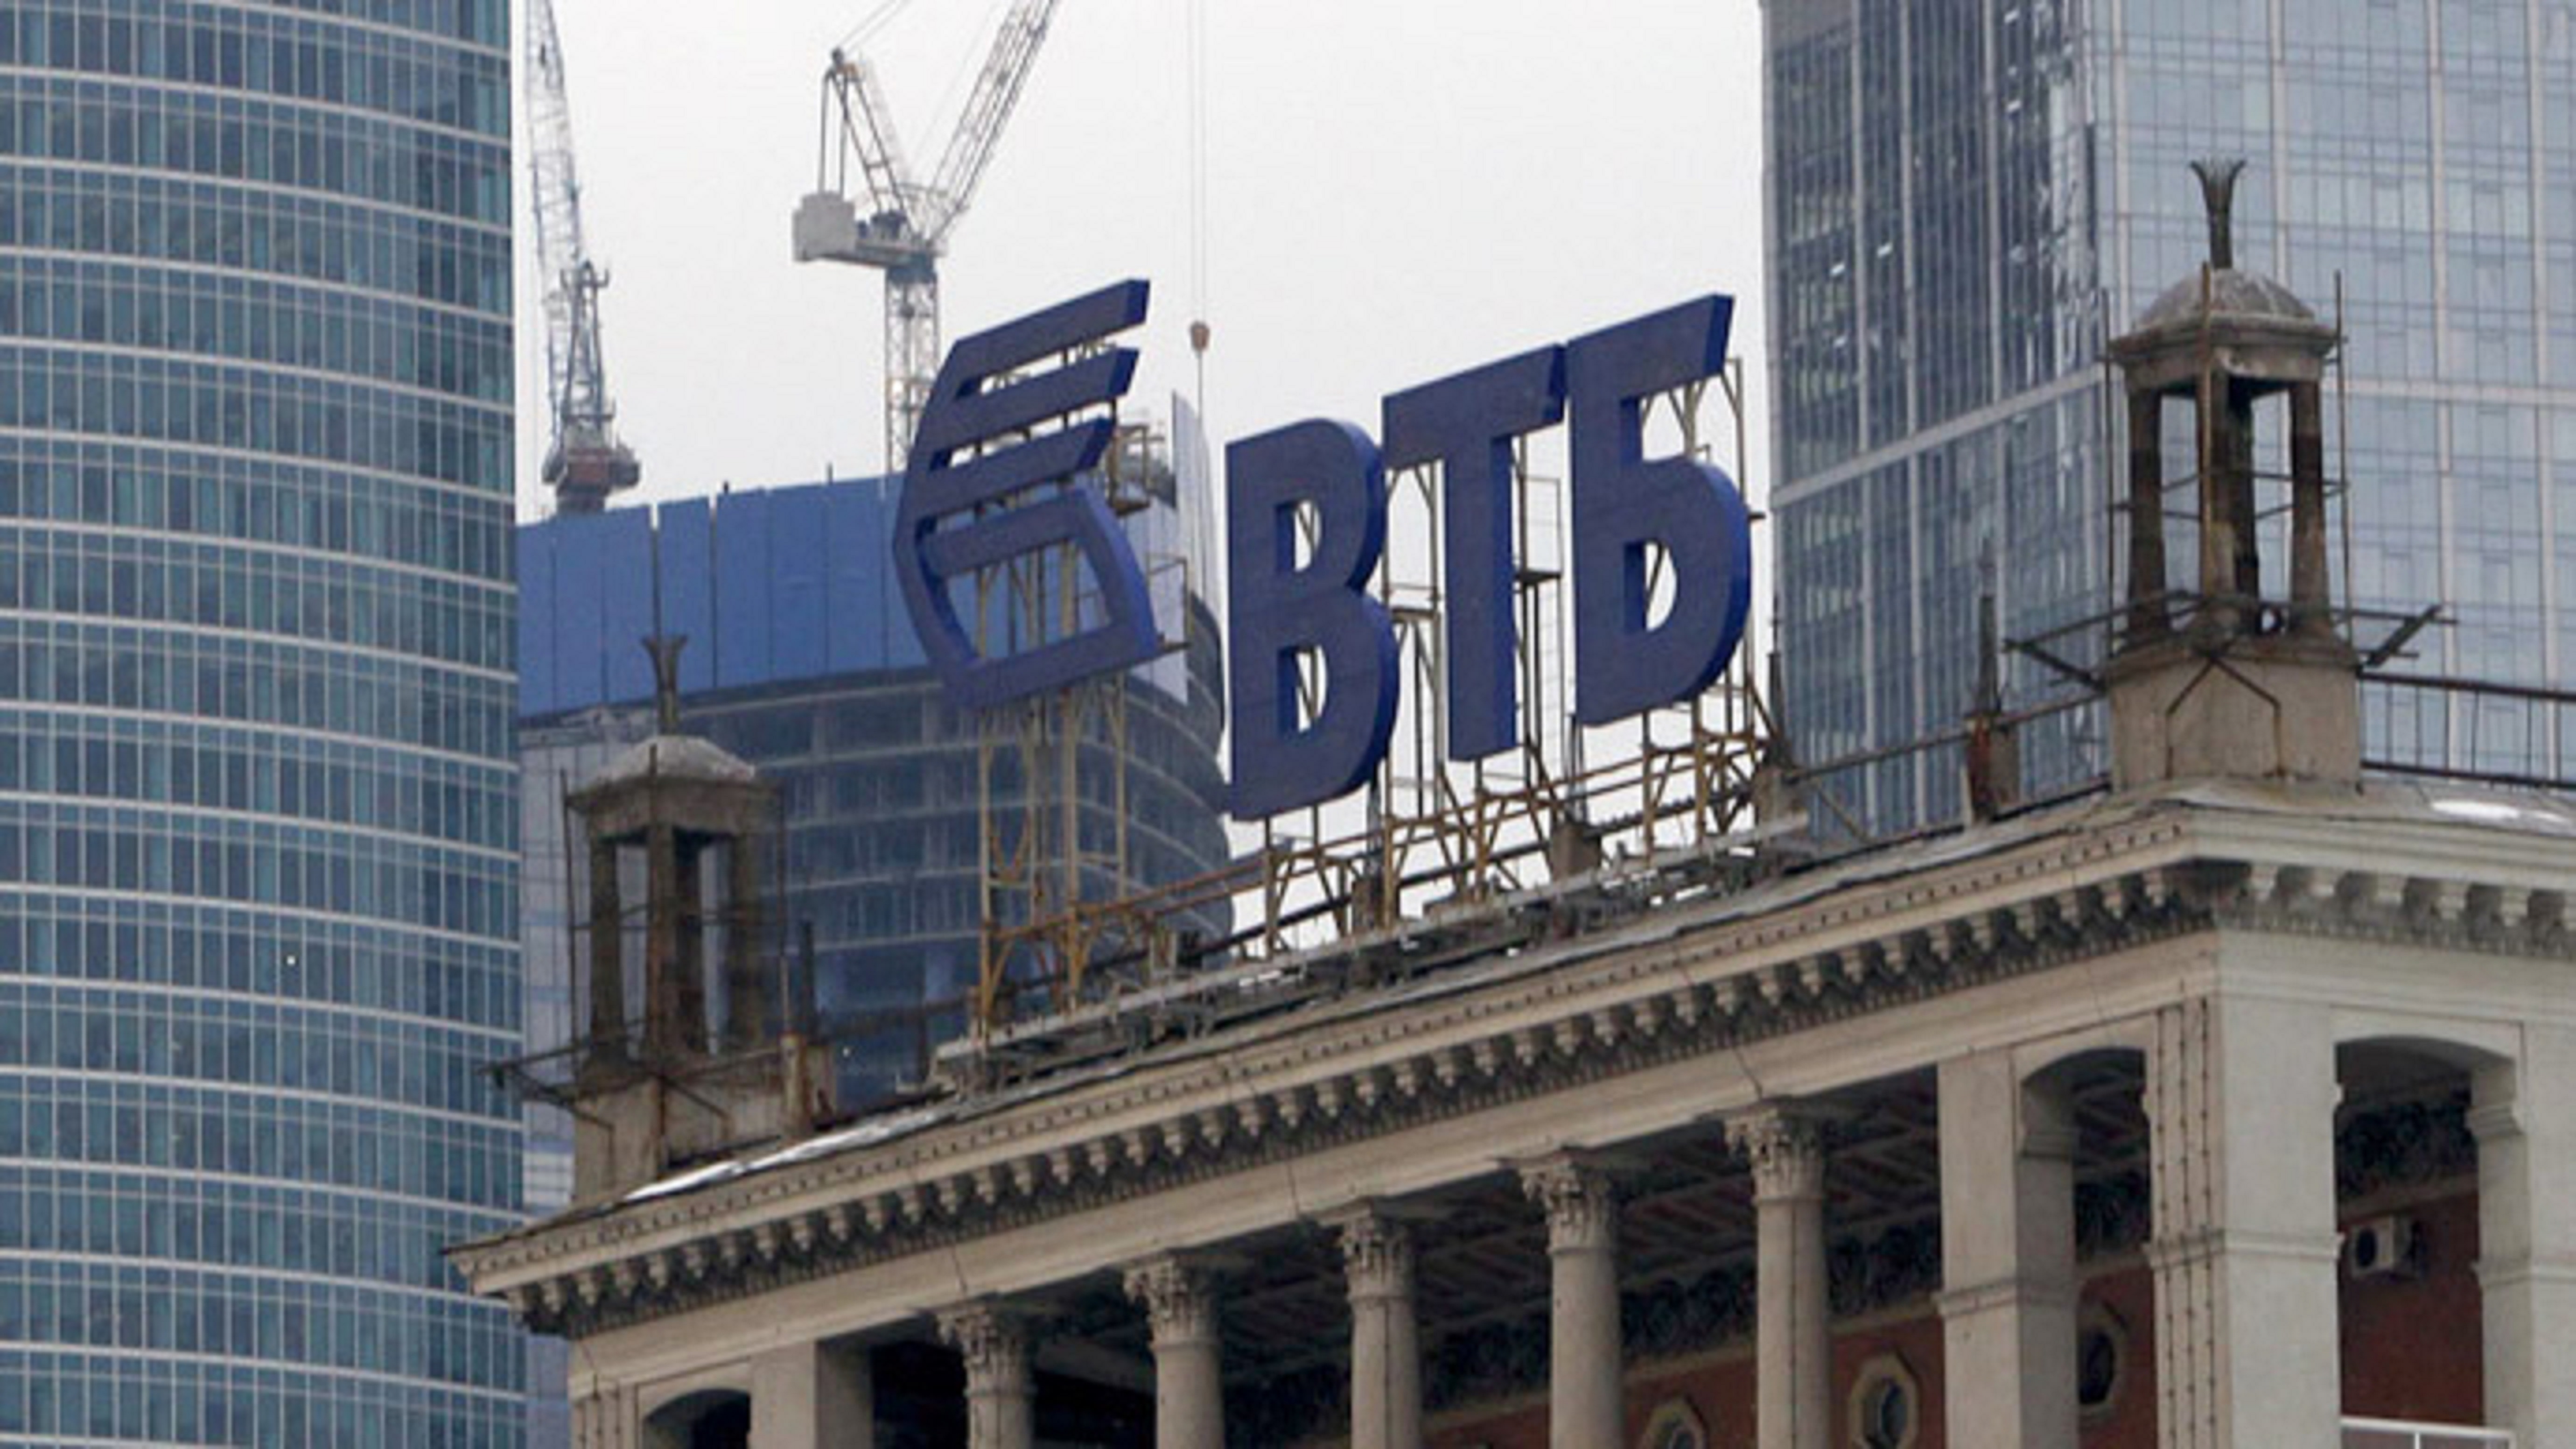 ВТБ. Здание ВТБ В Москве. ВТБ башня с новым логотипом. VTB Bank Europe.